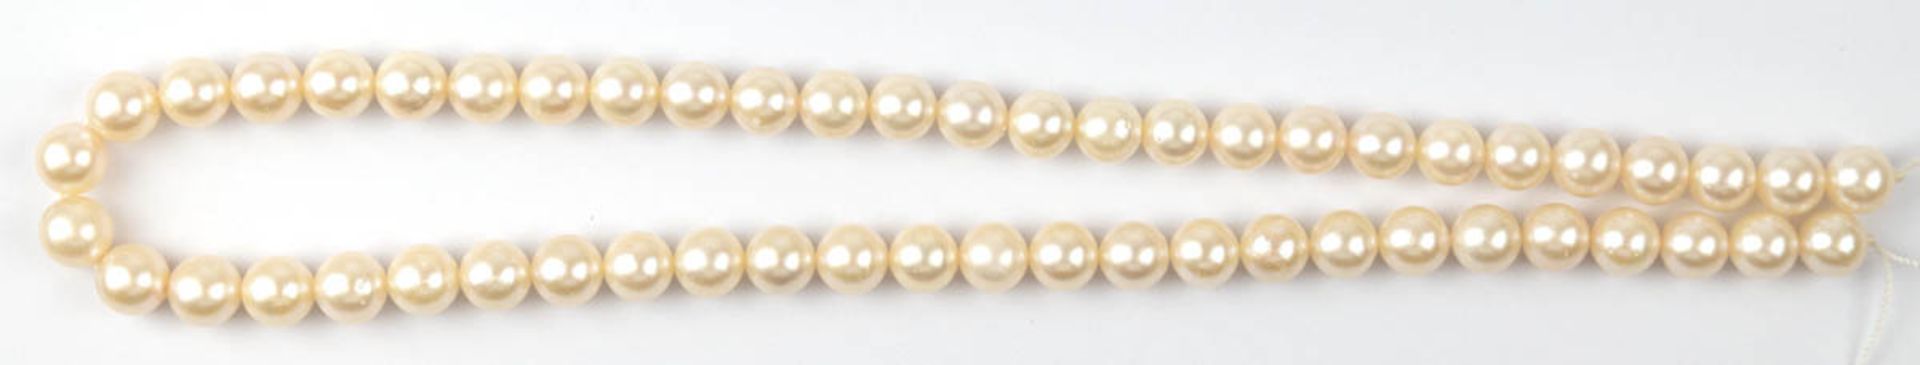 Perlen-Strang, ohne Schließe, Perlen-Dm. 7,5-8,0 mm, mit kl. Wachstumsmerkmalen, 53Stk., L. 41 cm